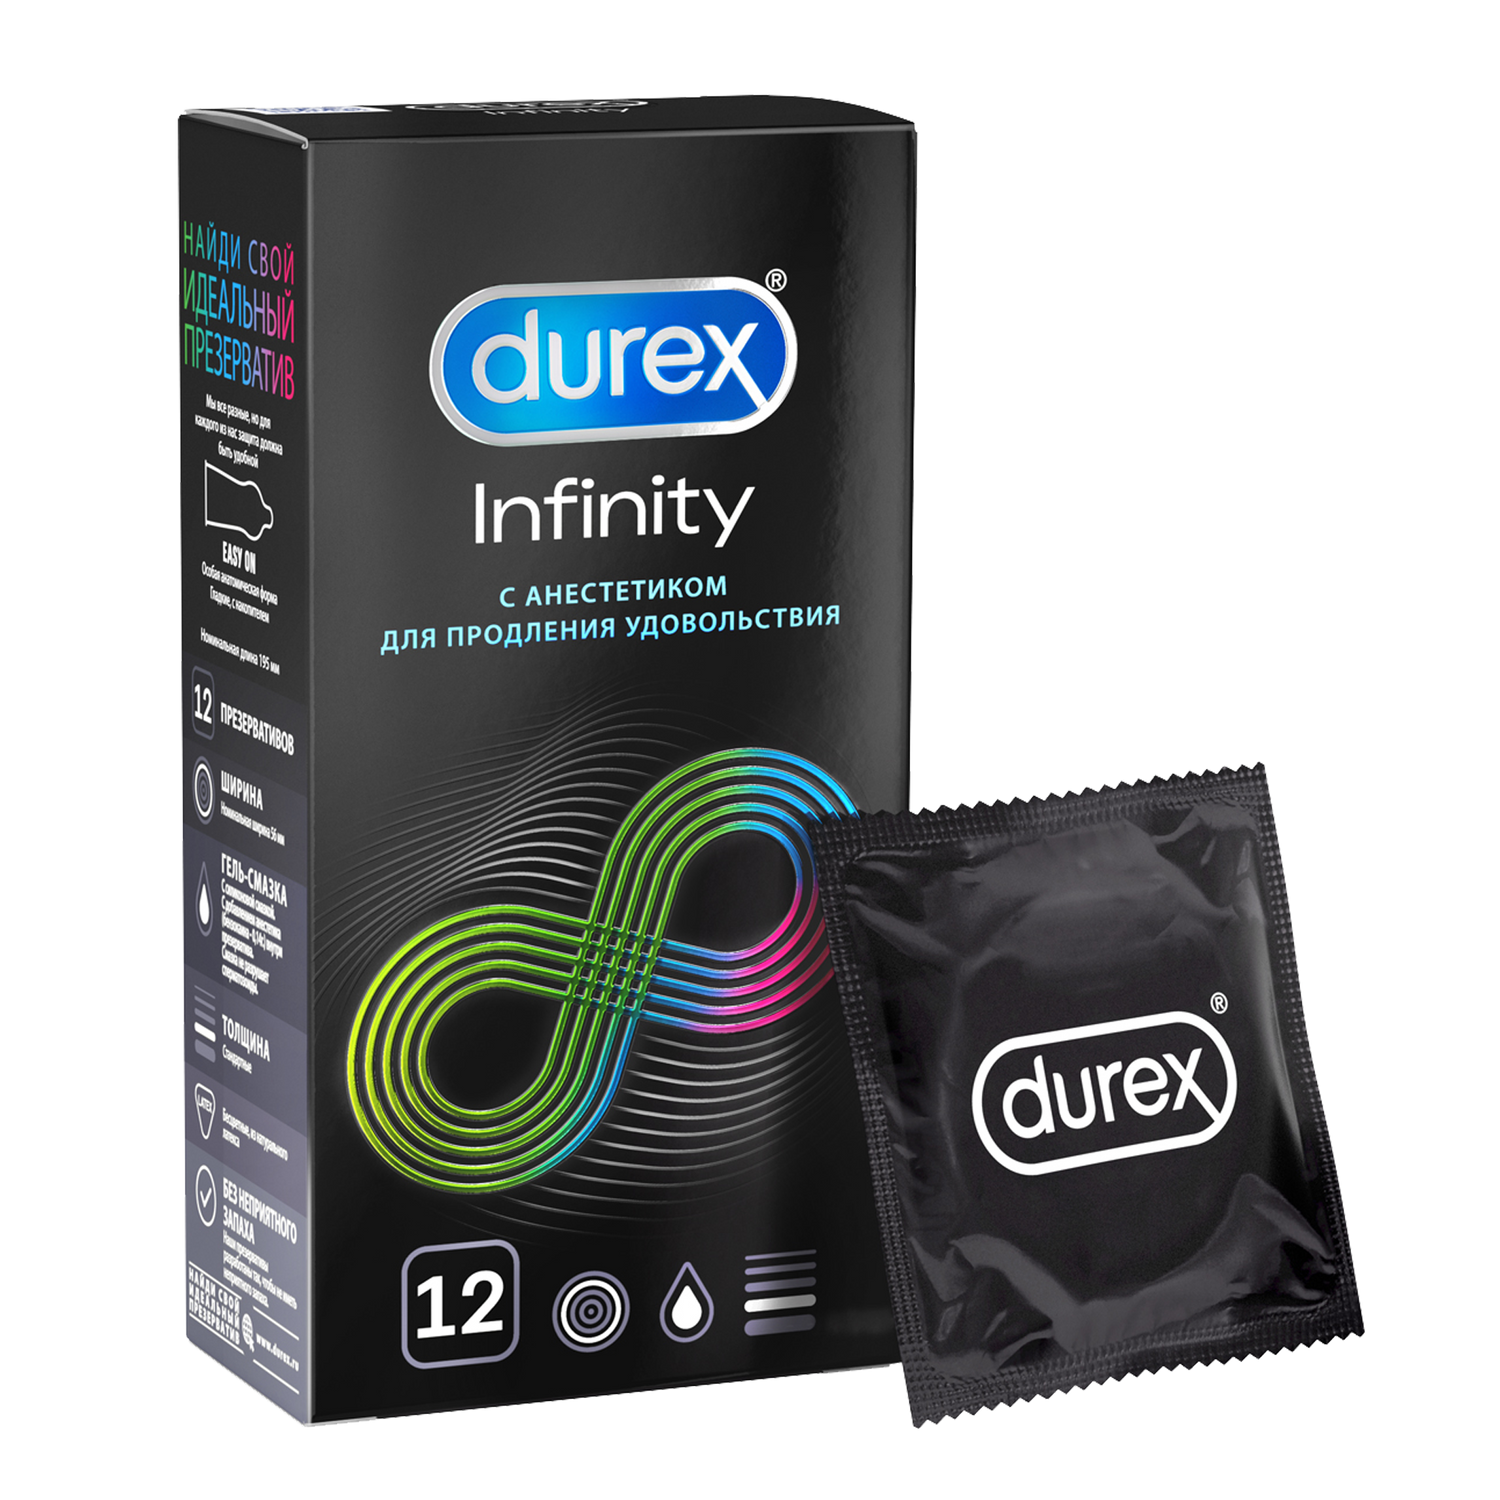 Презервативы Durex Infinity гладкие с анестетиком, 12 шт. комплект презервативы durex invisible xxl ультратонкие 3 шт х 2 уп